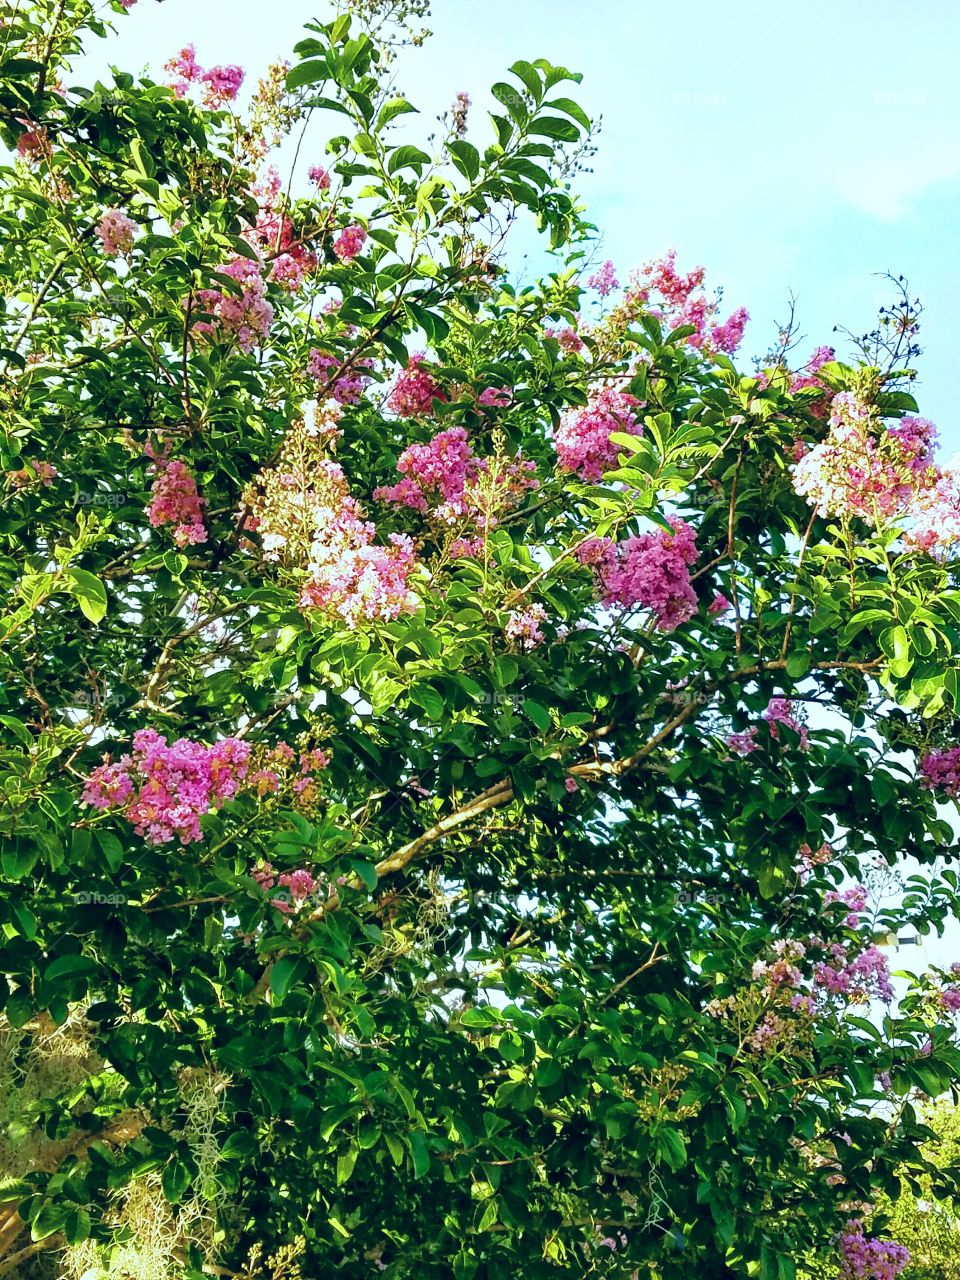 Blooming pink flowers on tree